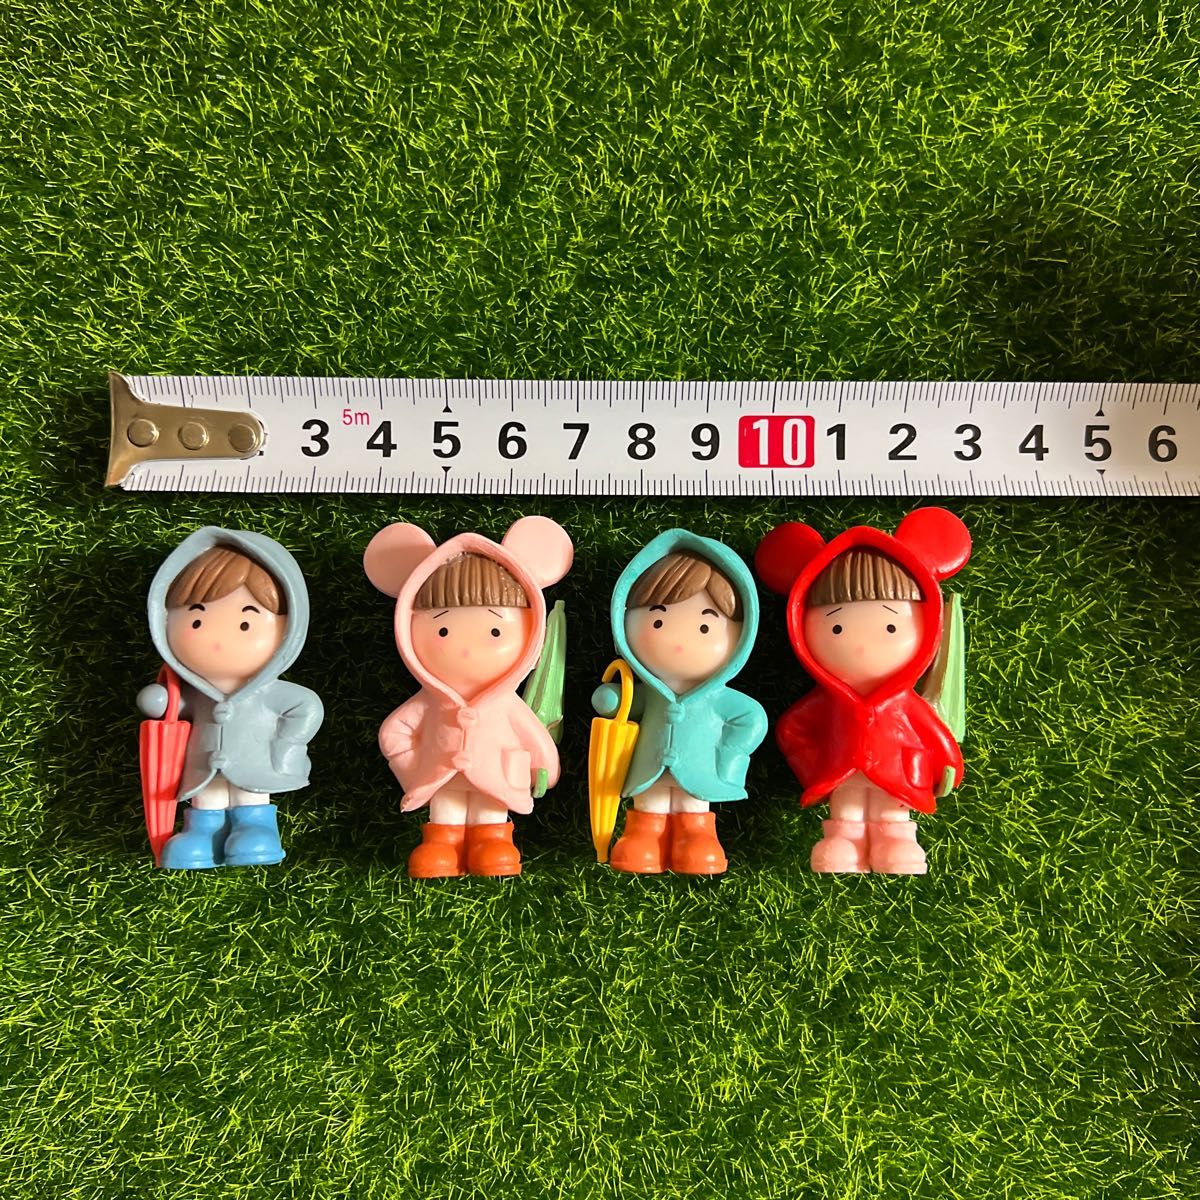 傘持ってる人形4個 ミニチュア カップル 置物 フィギュア ドールハウス 箱庭